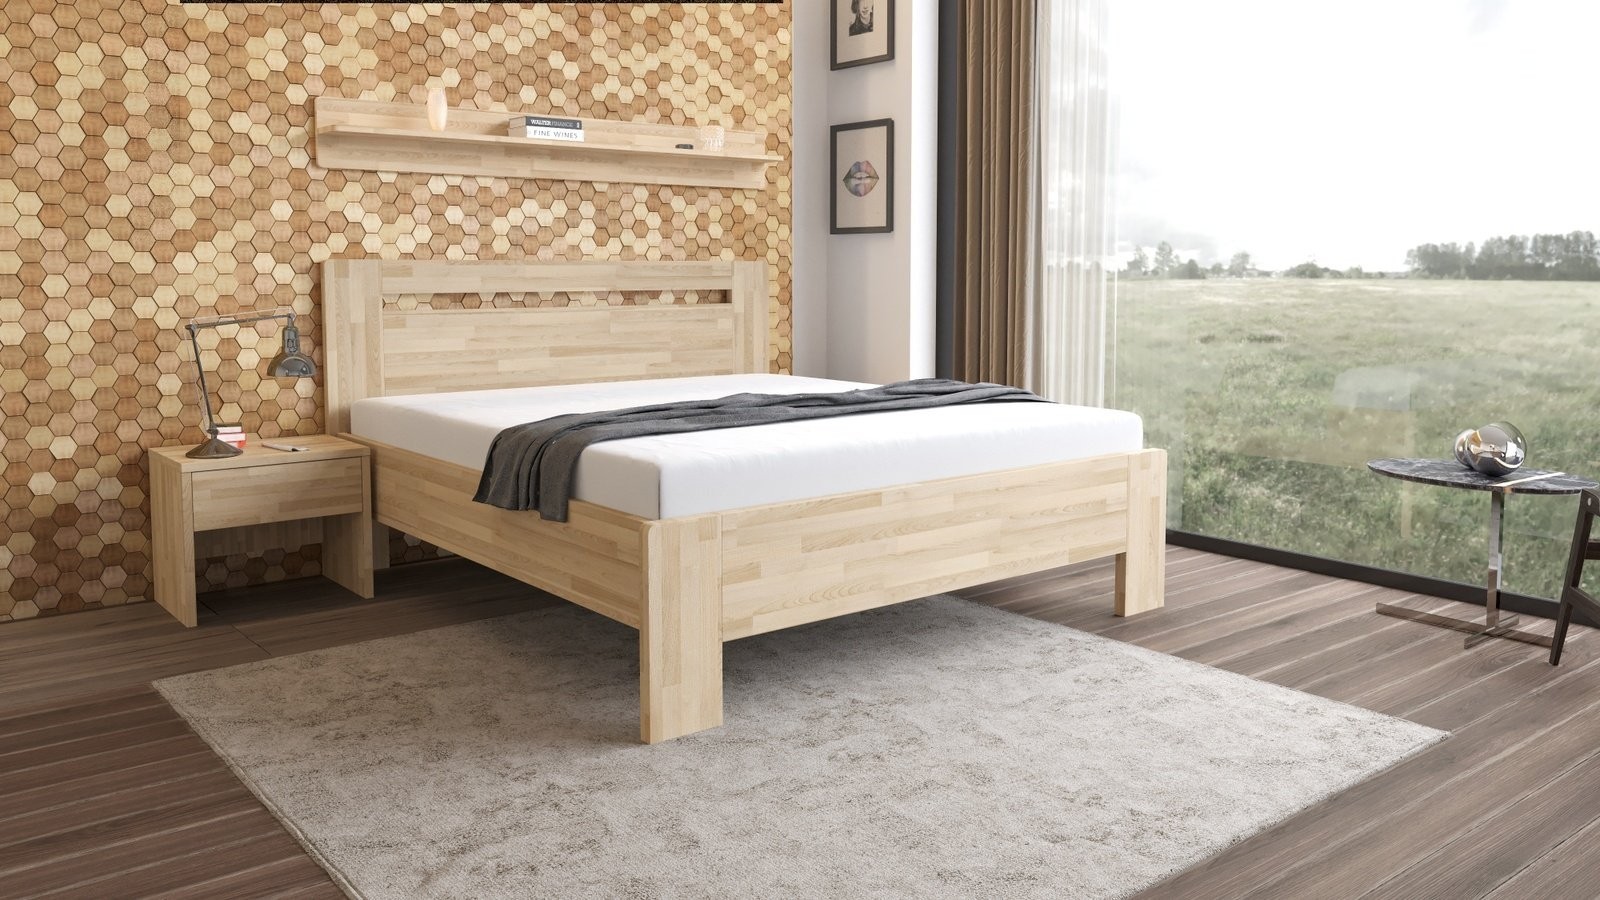 TEXPOL LÍVIA H - masivní dubová postel s horizontálně děleným čelem 160 x 200 cm, dub masiv